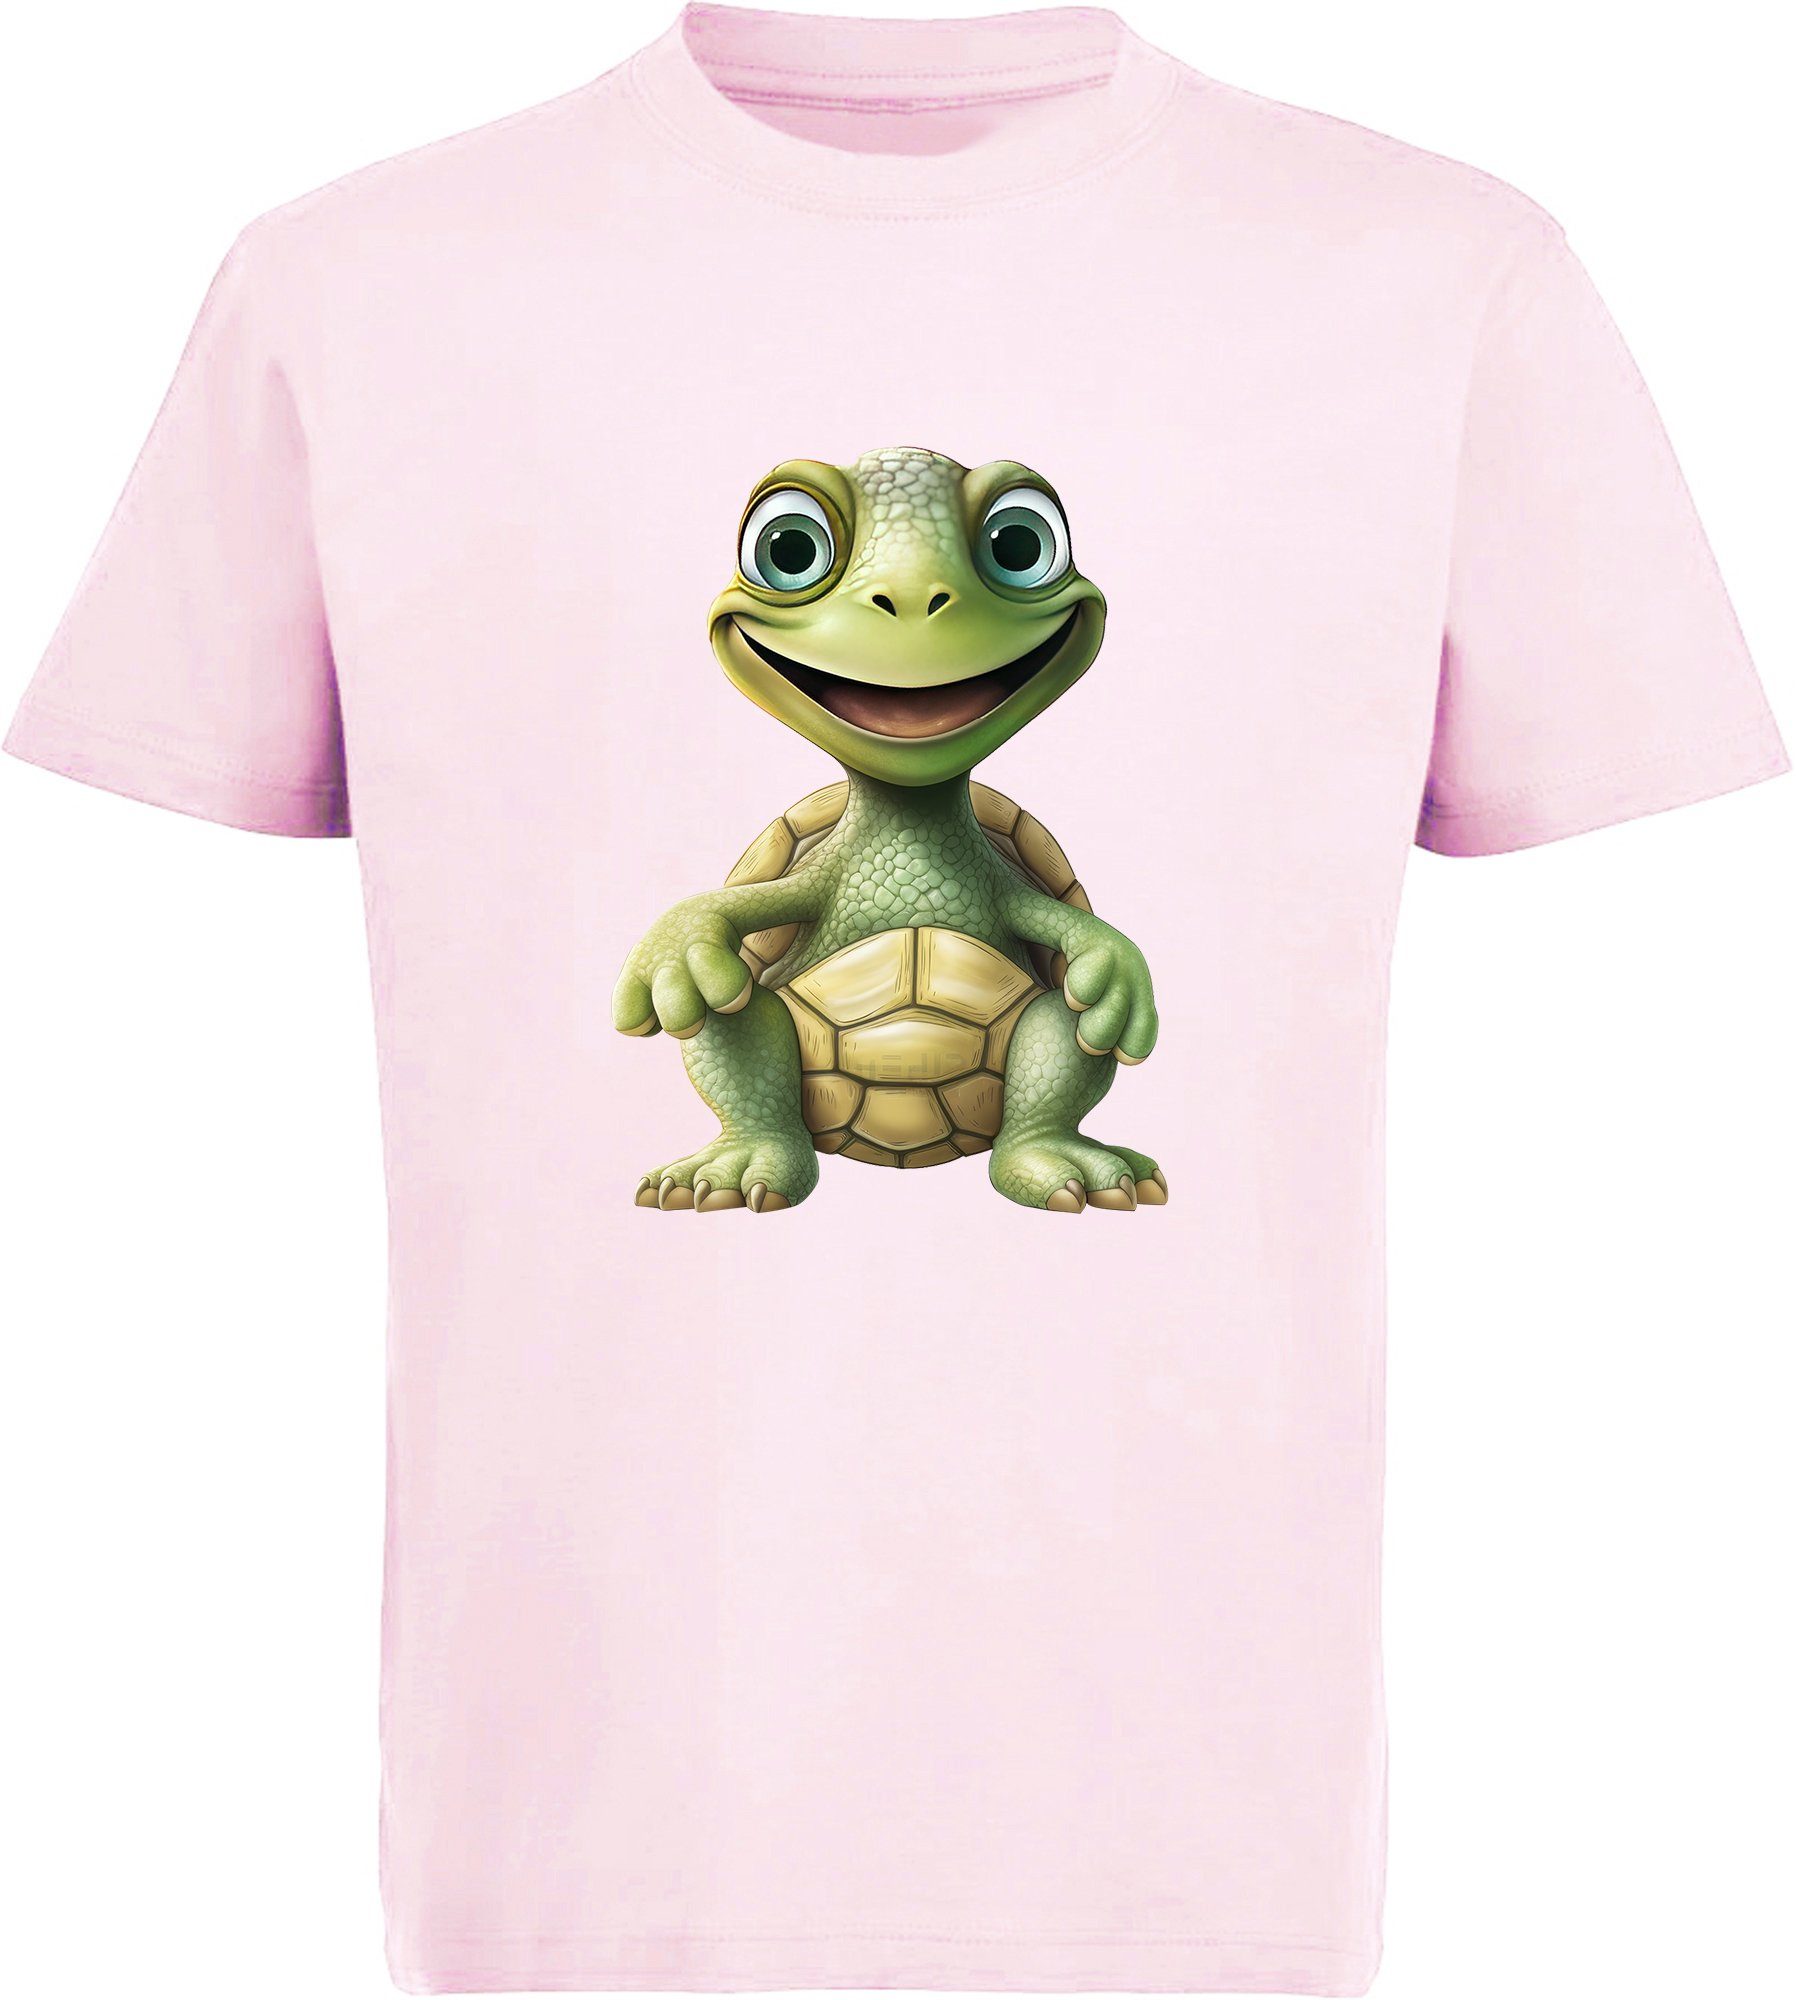 MyDesign24 T-Shirt Kinder Baumwollshirt Shirt bedruckt Baby - rosa i279 mit Wildtier Schildkröte Aufdruck, Print